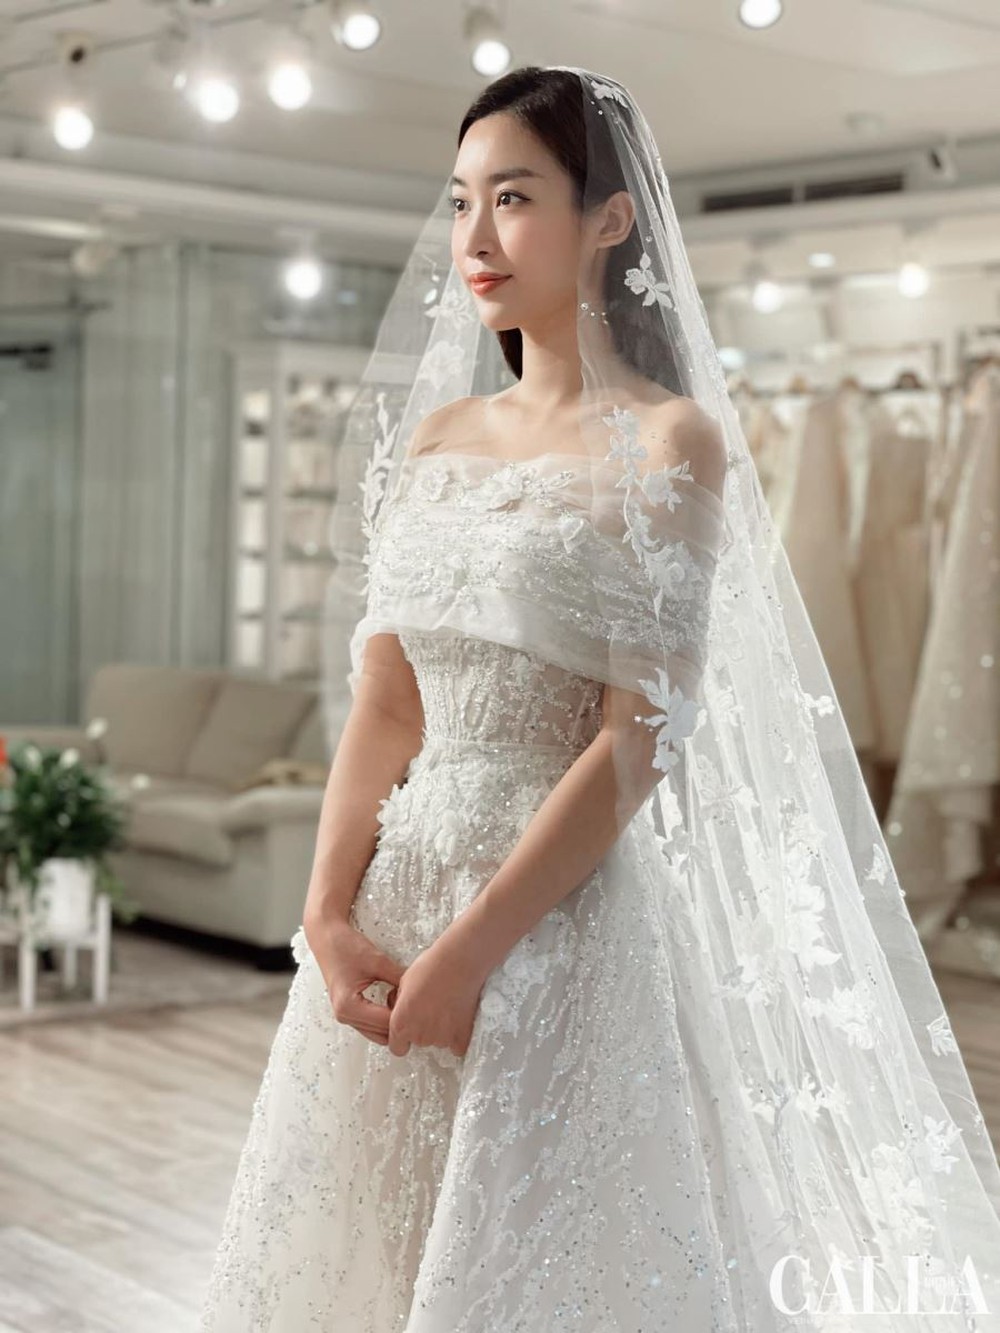 Đỗ Mỹ Linh thử váy cưới trước thềm hôn lễ: Nhan sắc cô dâu mỹ miều, khí chất chuẩn phu nhân hào môn - Ảnh 1.